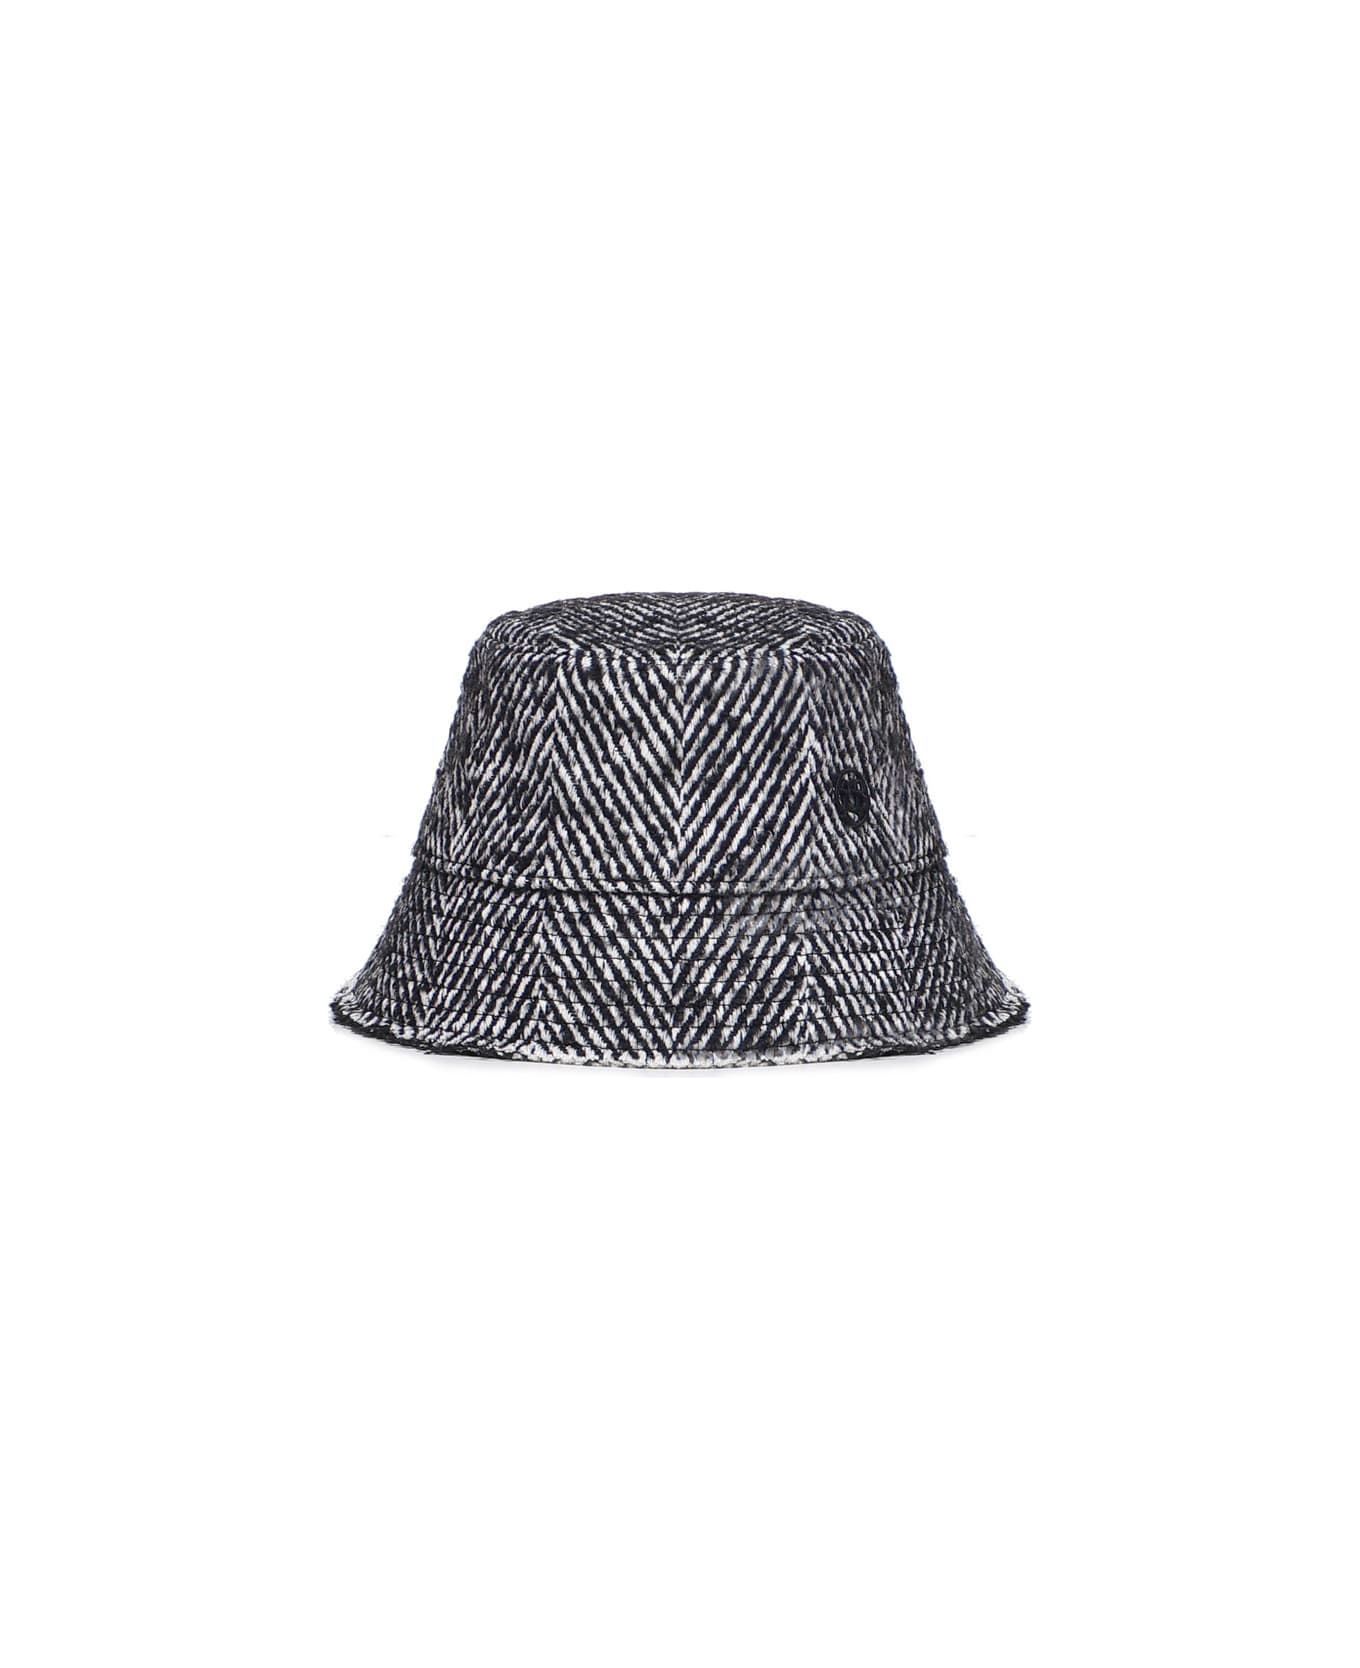 Ruslan Baginskiy Fisherman's Hat - Black 帽子